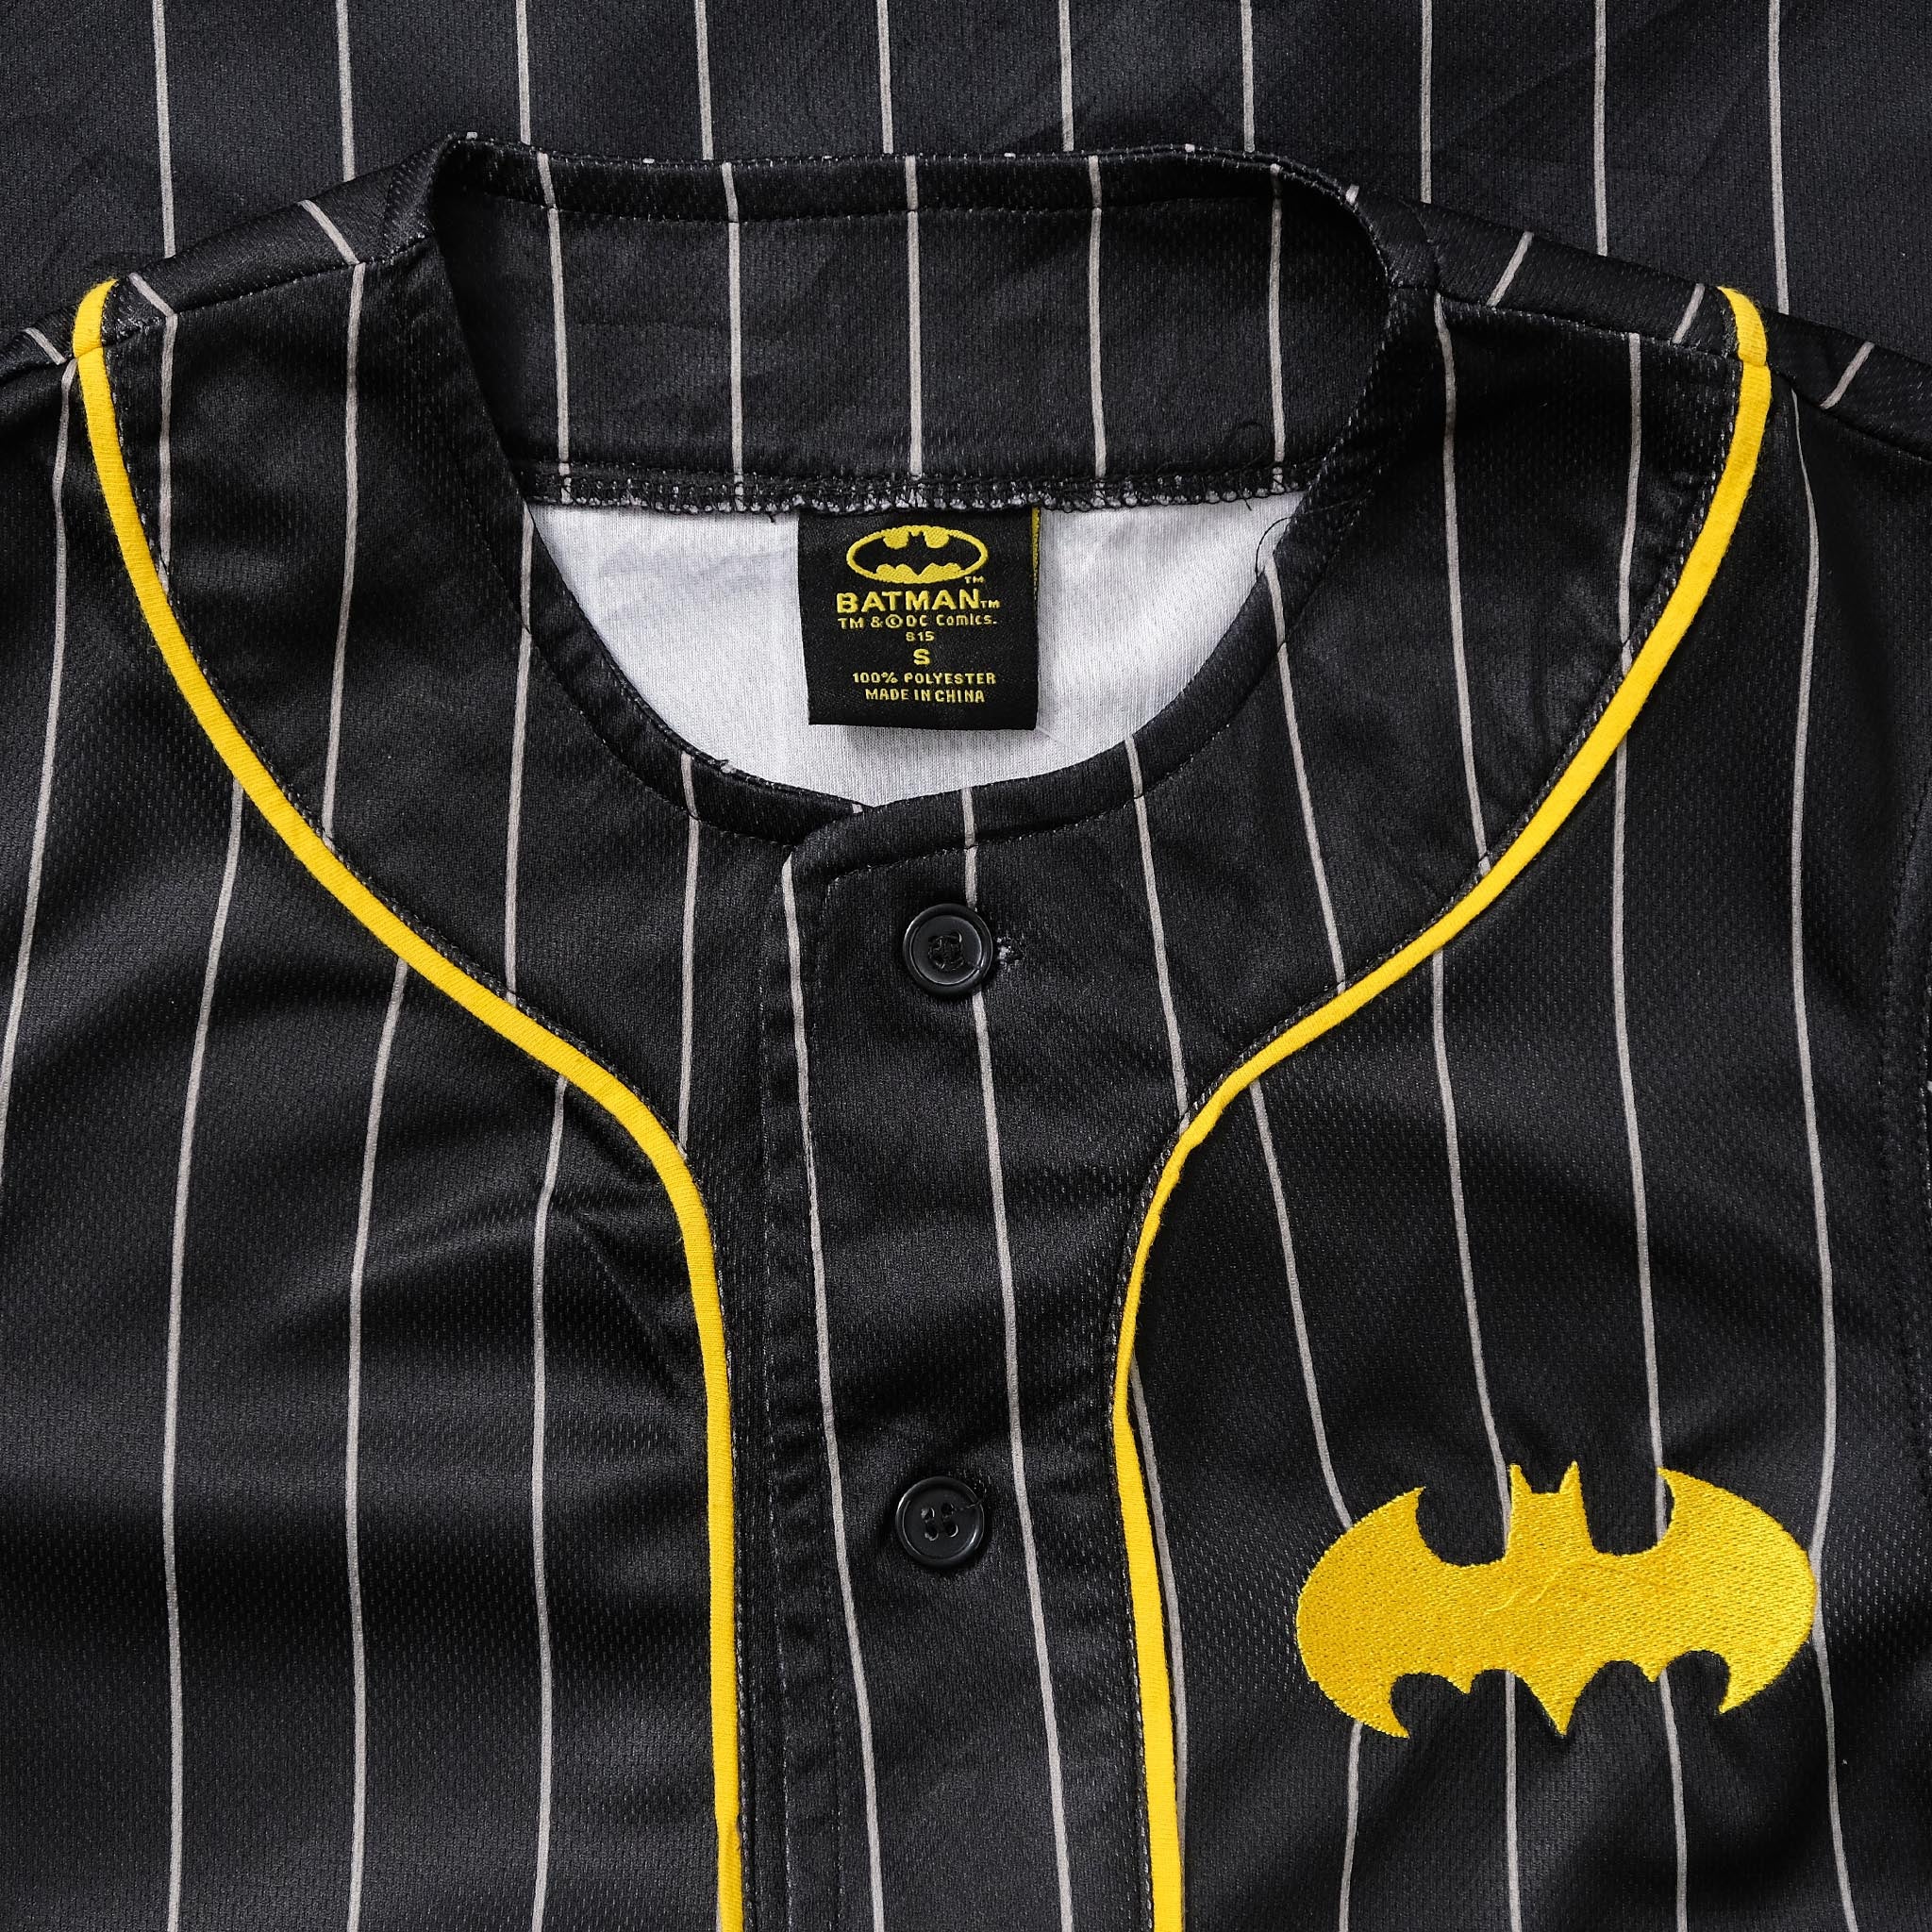 Batman Baseball Jersey XSmall